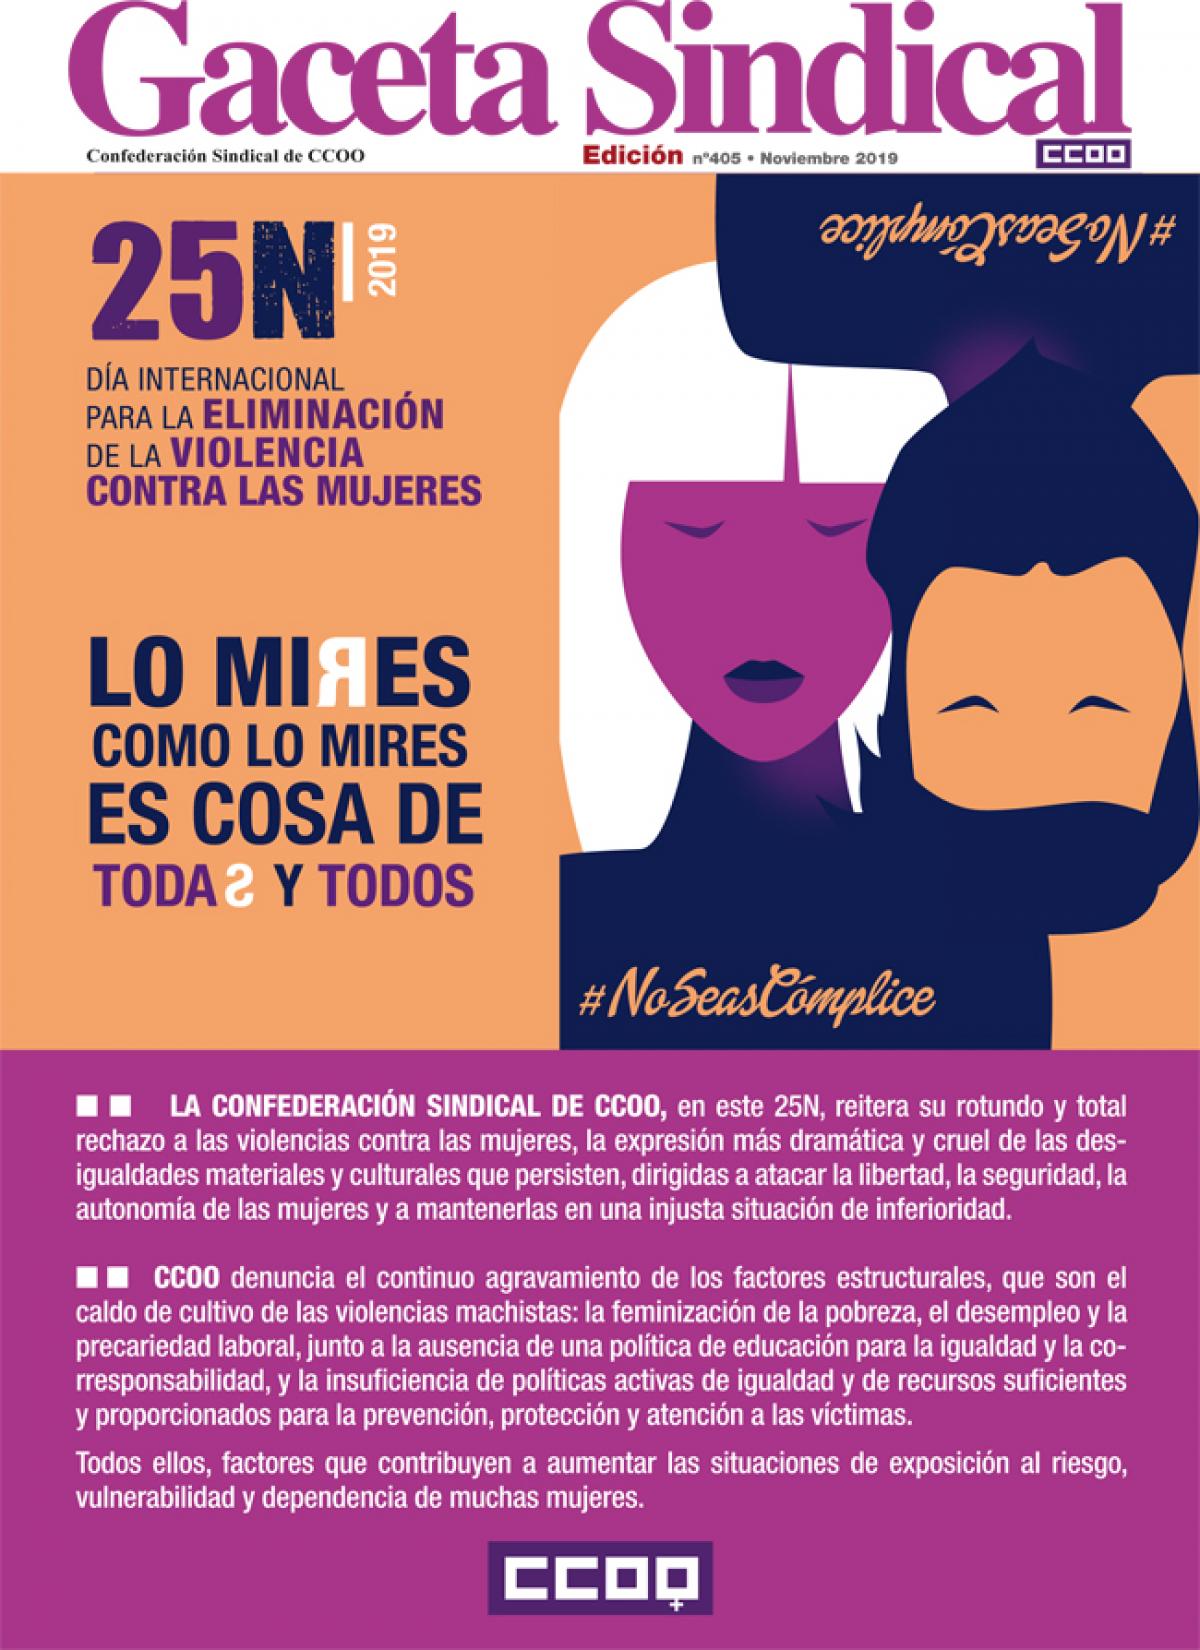 Gaceta Sindical Digital nº 405 25N Día Internacional para la eliminación de la violencia contra las mujeres